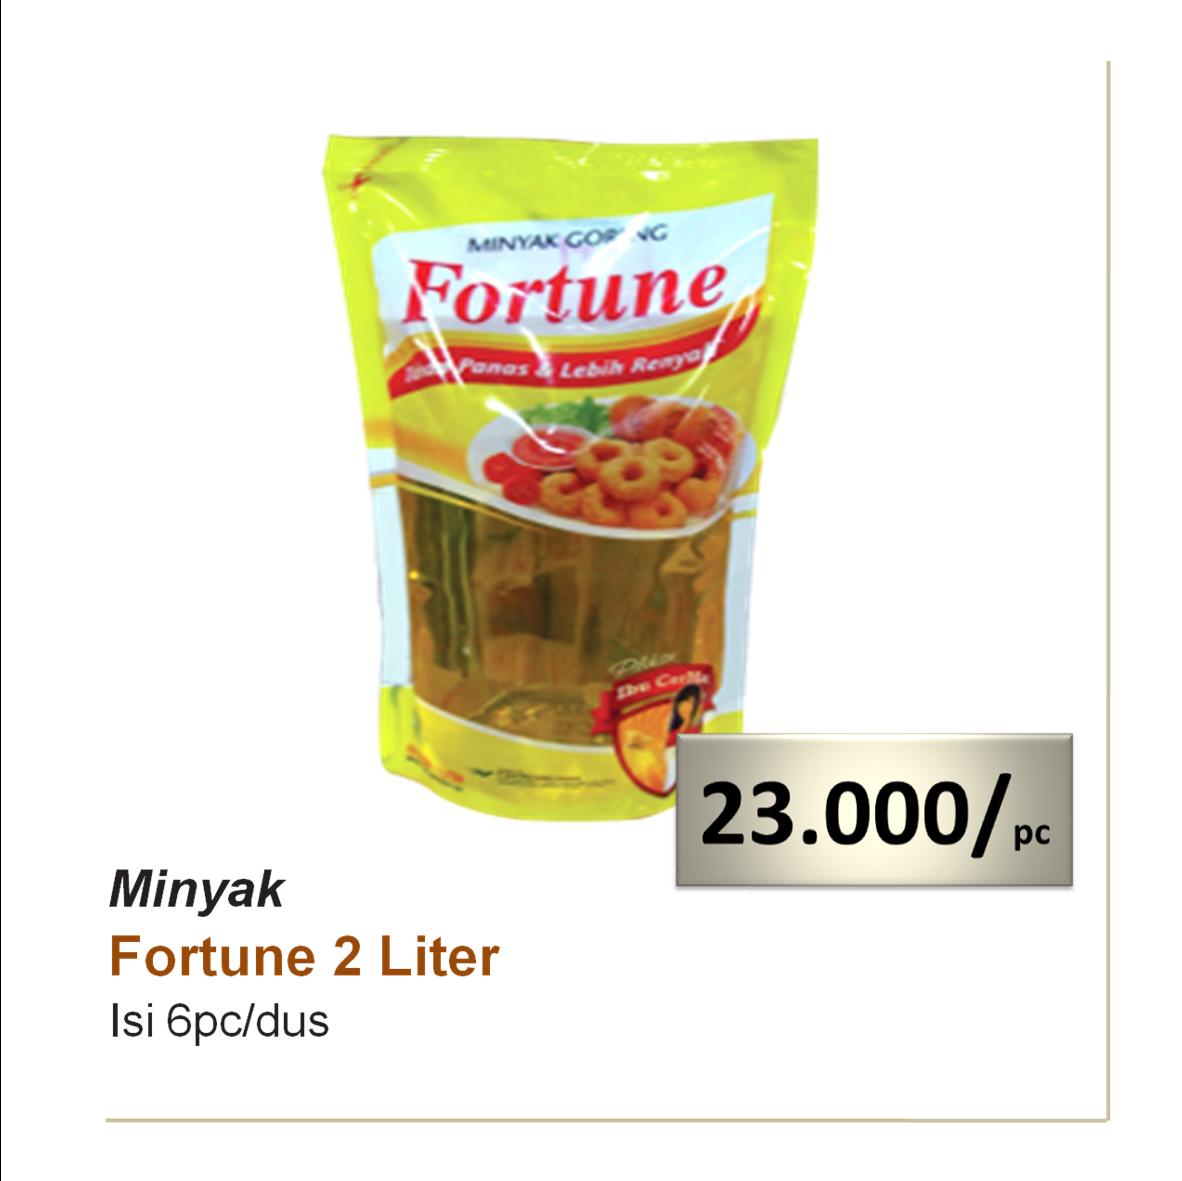 Minyak Fortune 2 Liter